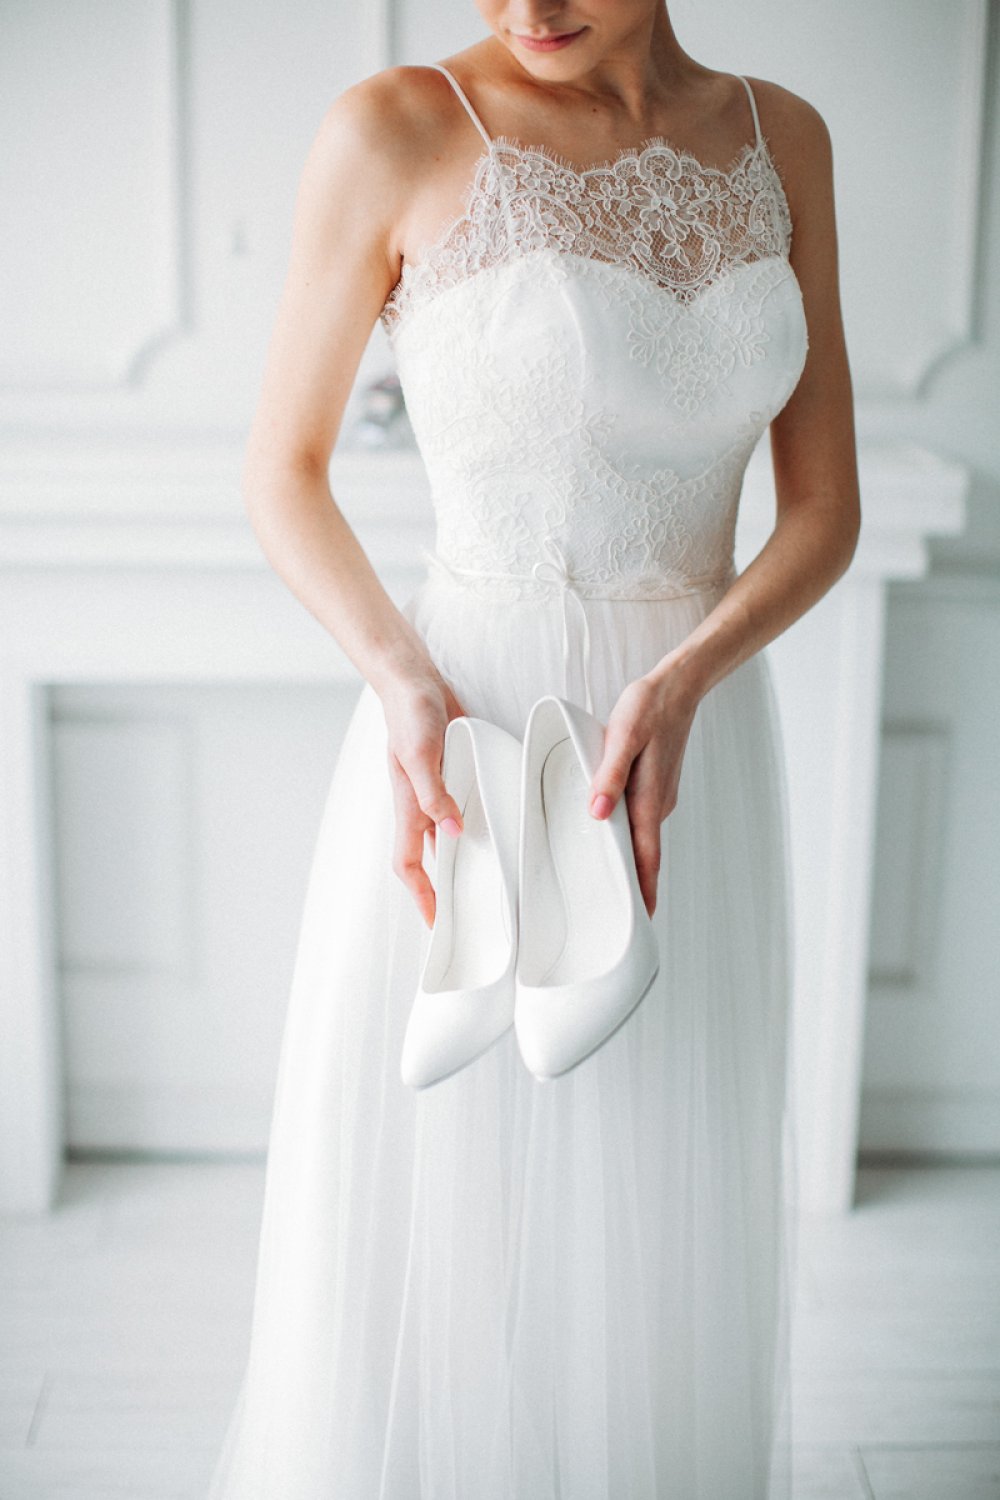 Кружевное платье невесты на тонких брительках